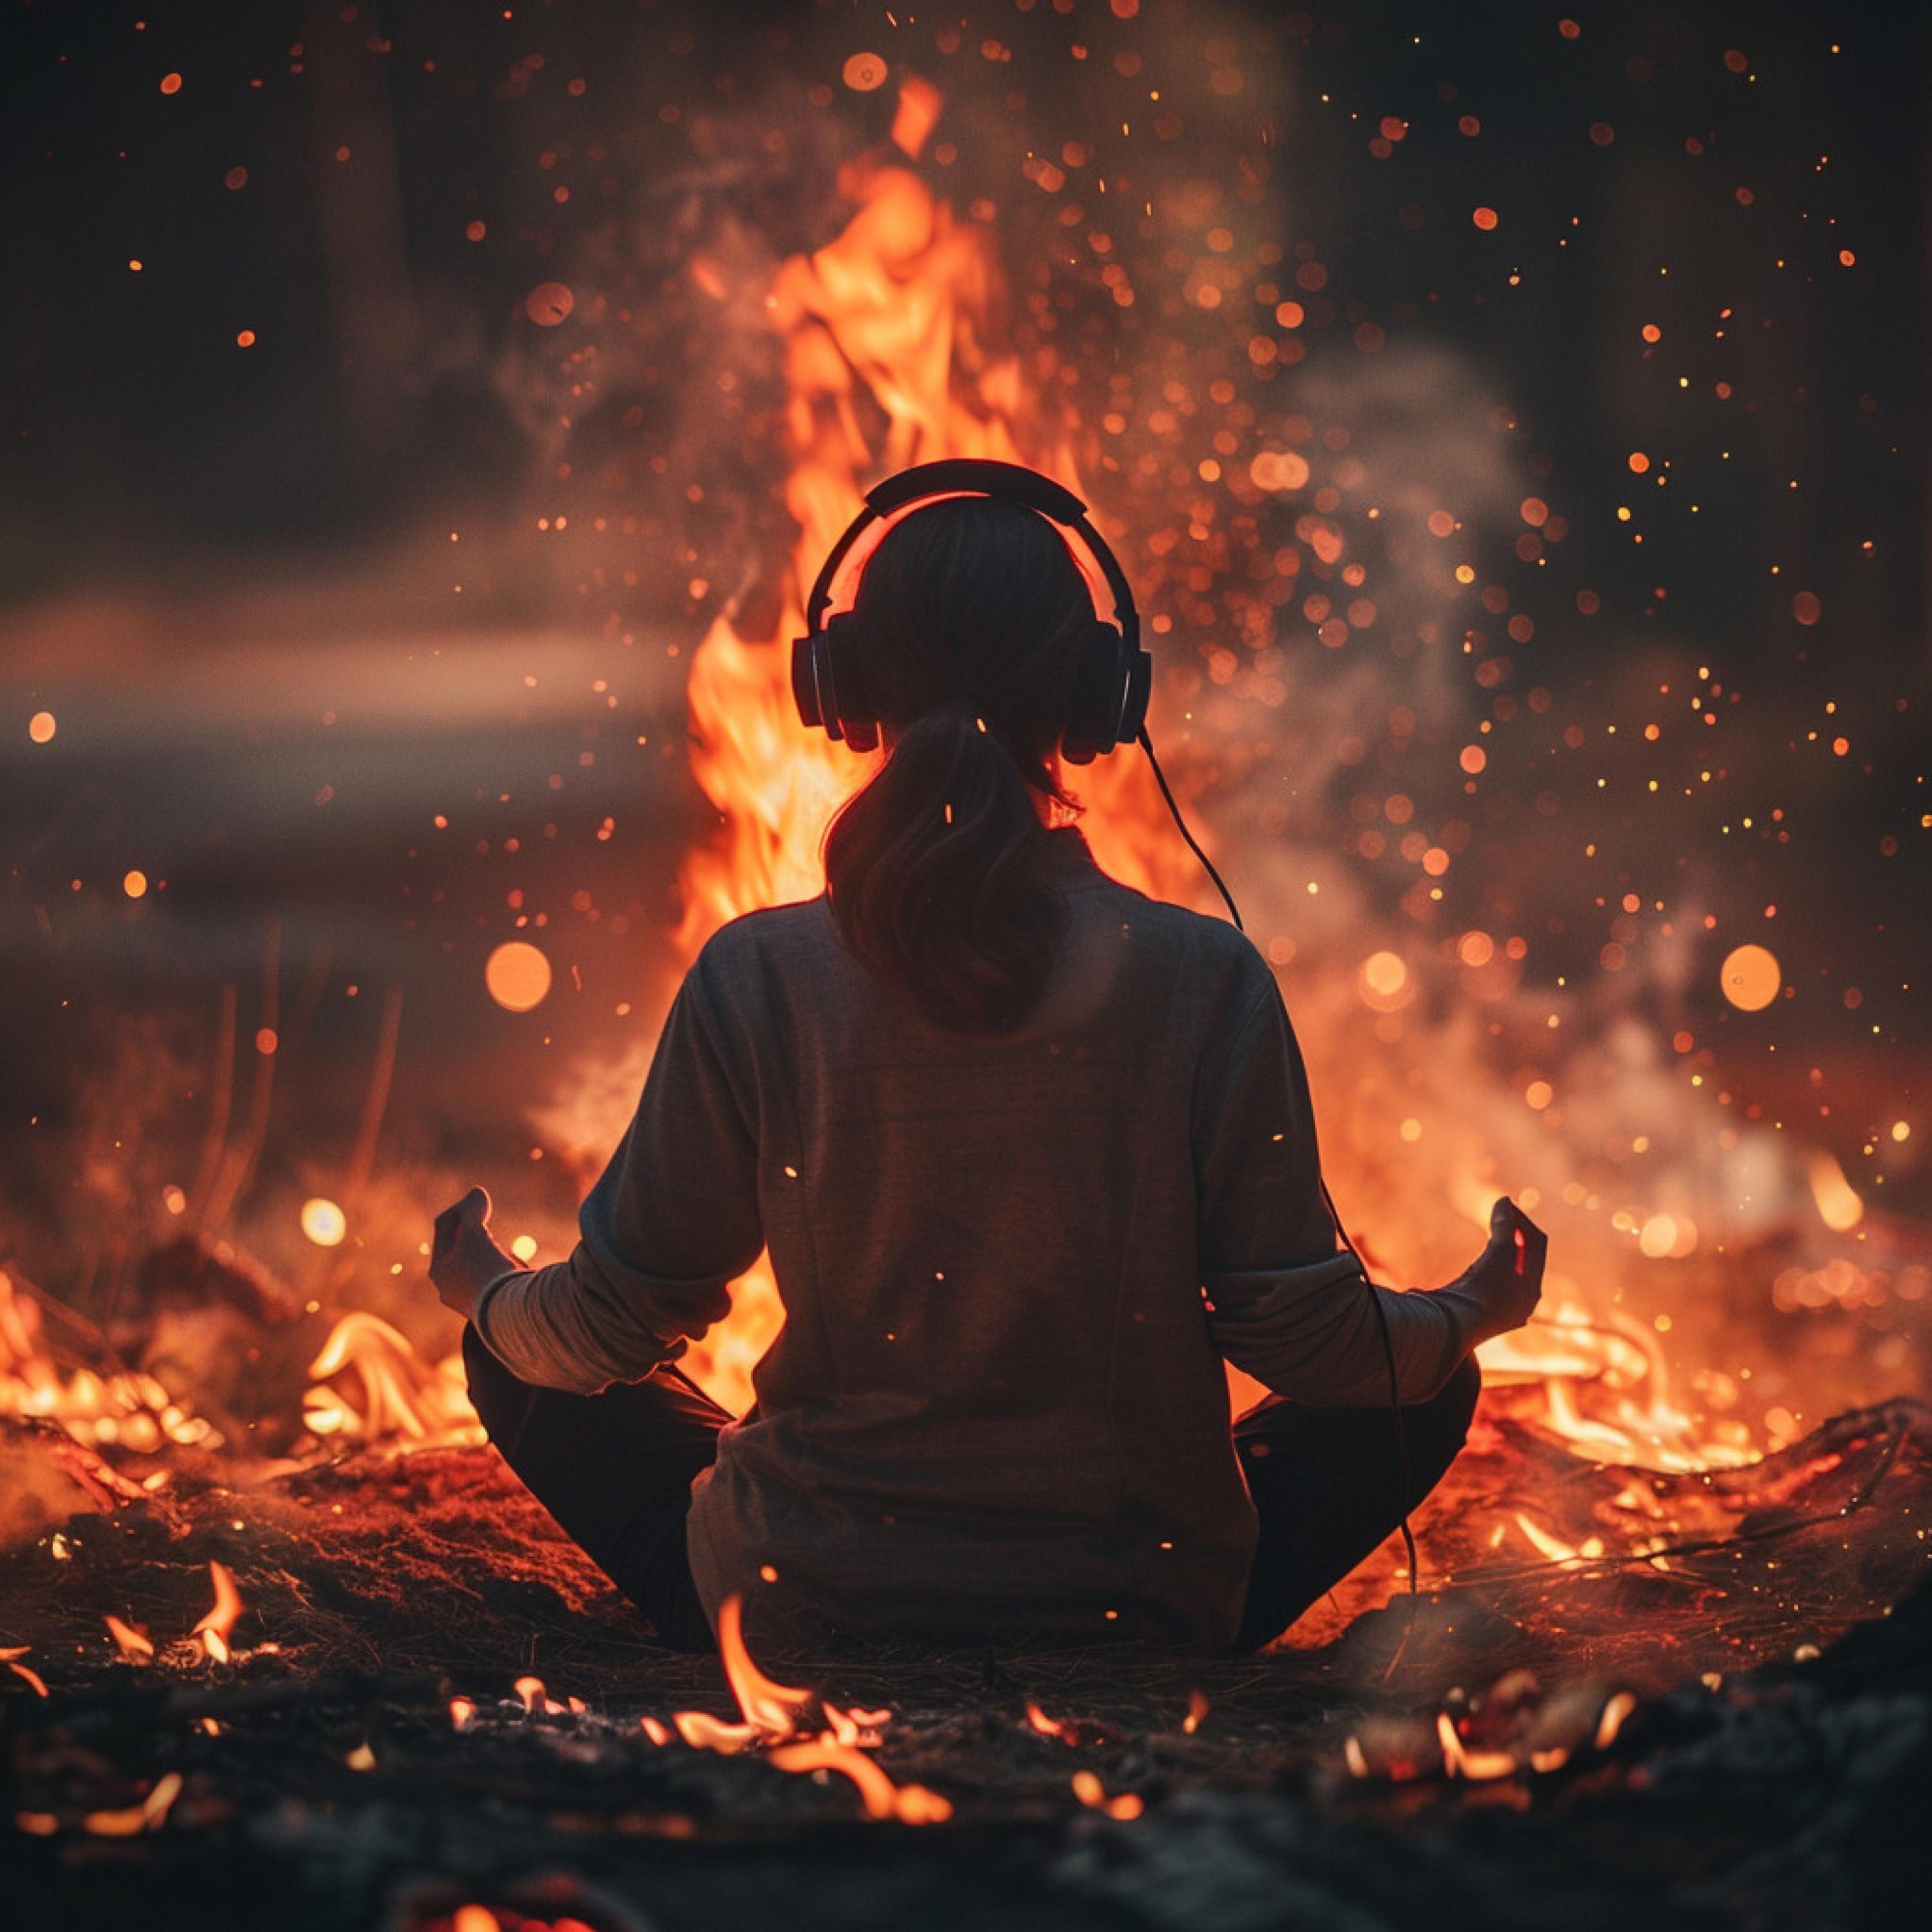 Meditation Music Solitude - Fiery Meditation Bliss